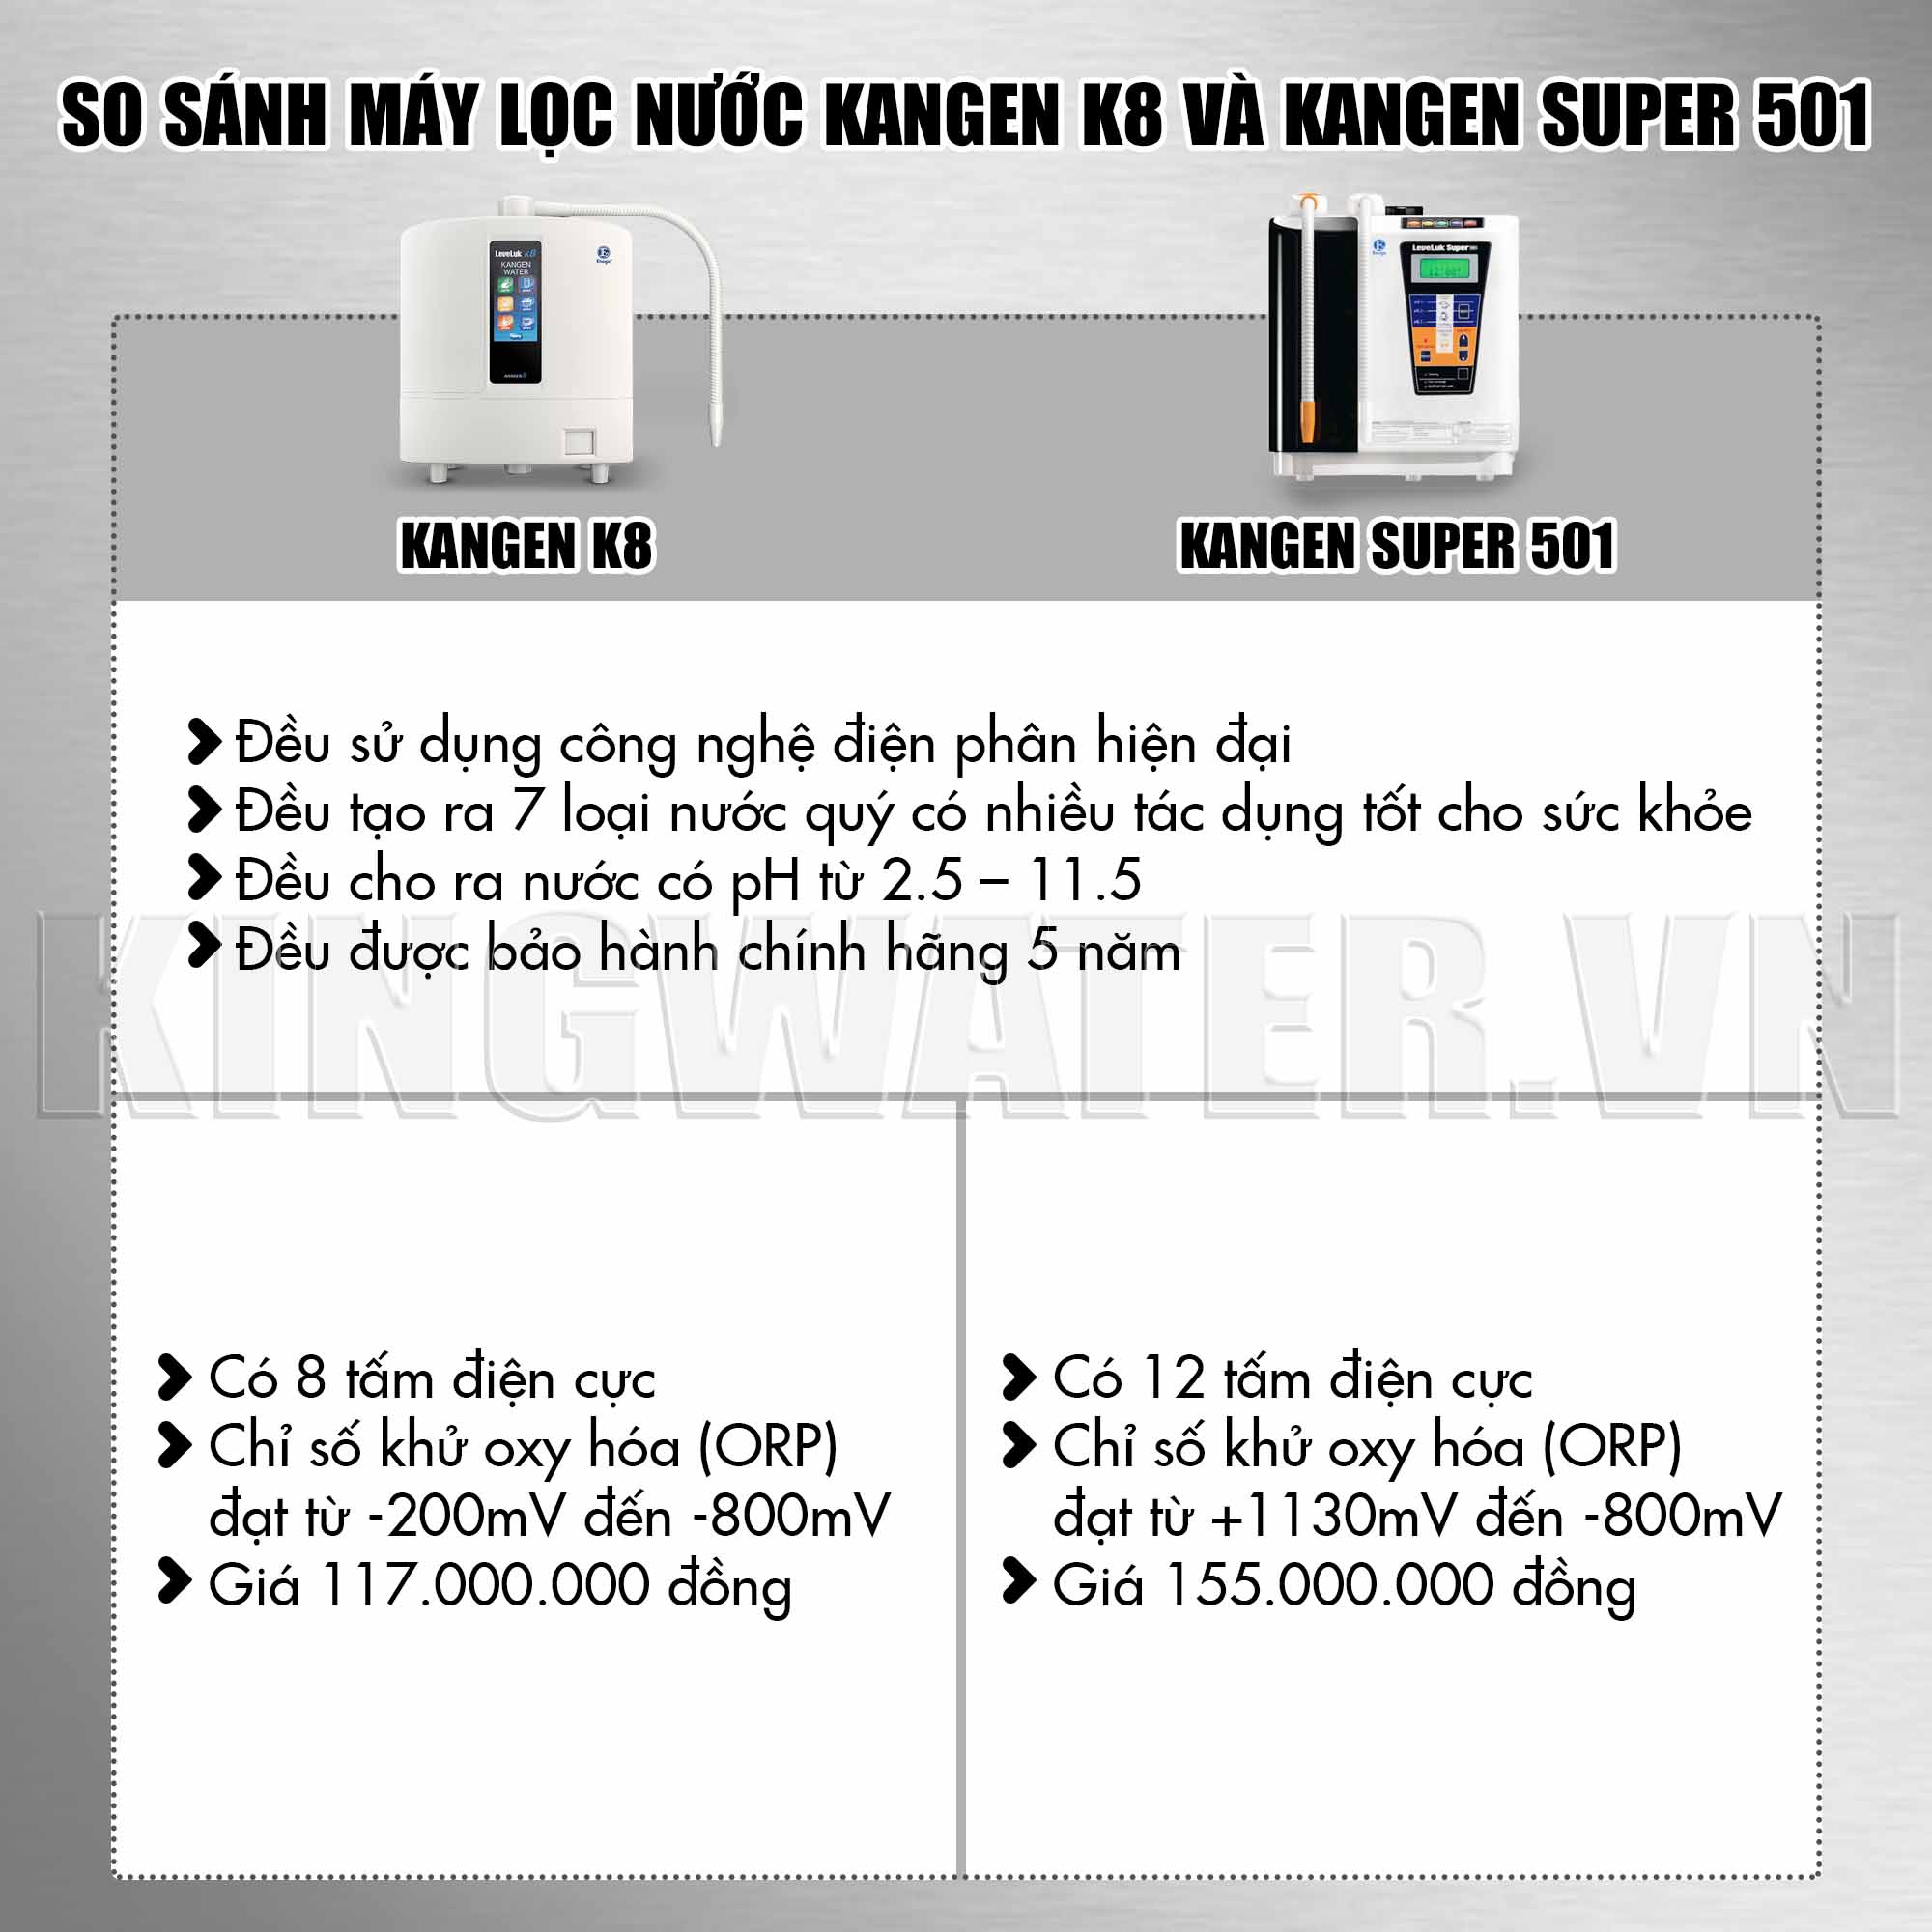 So sánh máy lọc nước Kangen K8 và Kangen Super 501